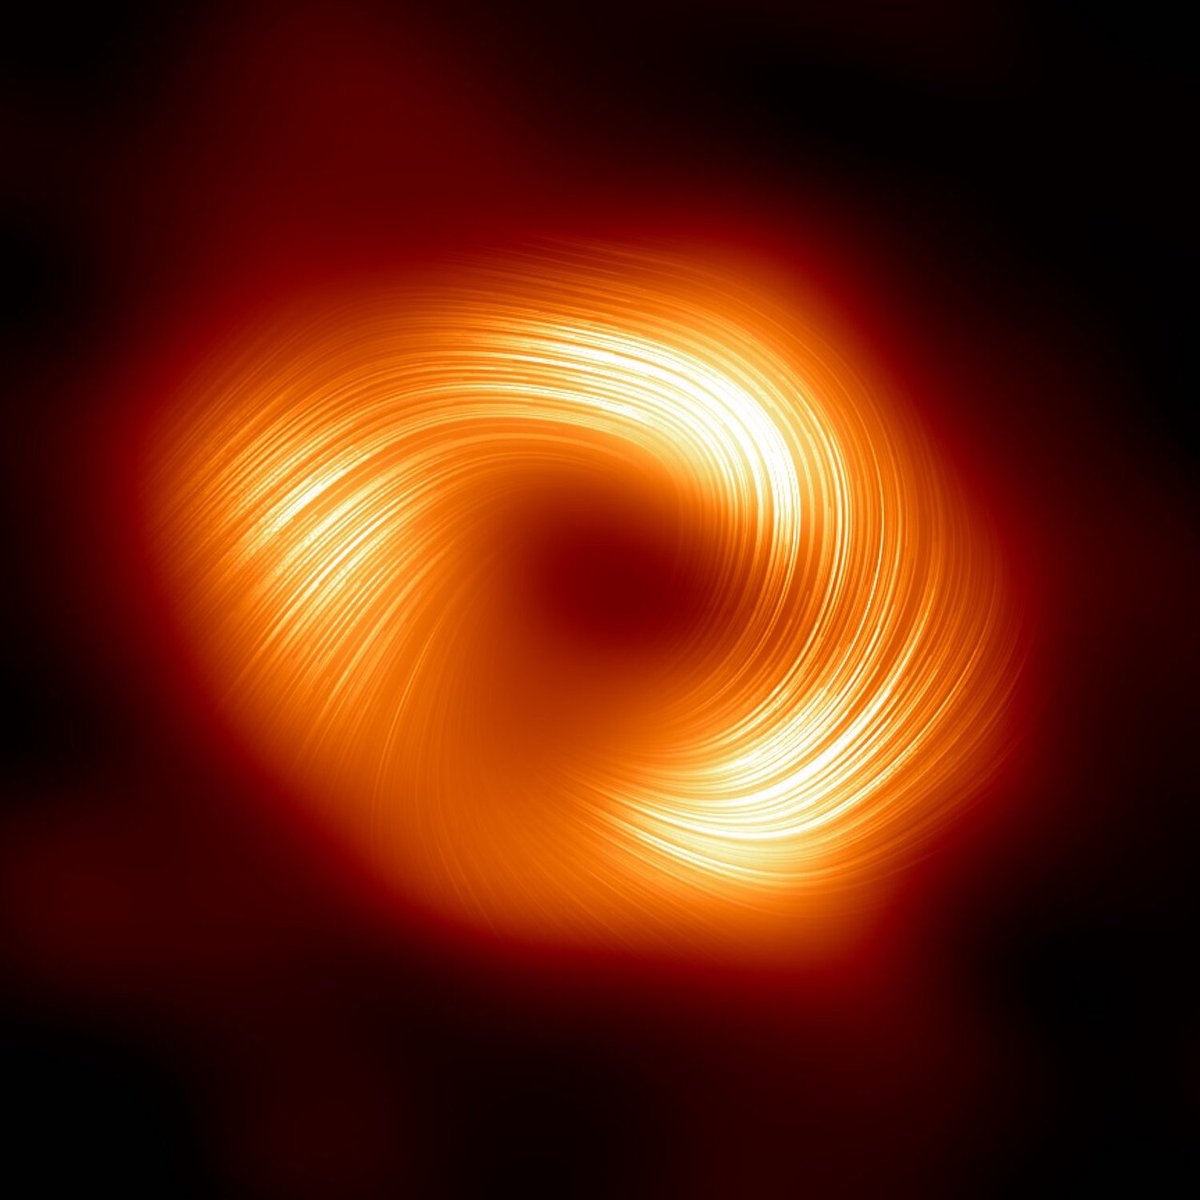 Scoperta una nuova caratteristica di Sgr A*, il buco nero ⚫️supermassiccio al centro della Via Lattea
Di cosa si tratta? 🤔 
Scoprilo su #Globalscience ➡️ tinyurl.com/2dsu8ss9